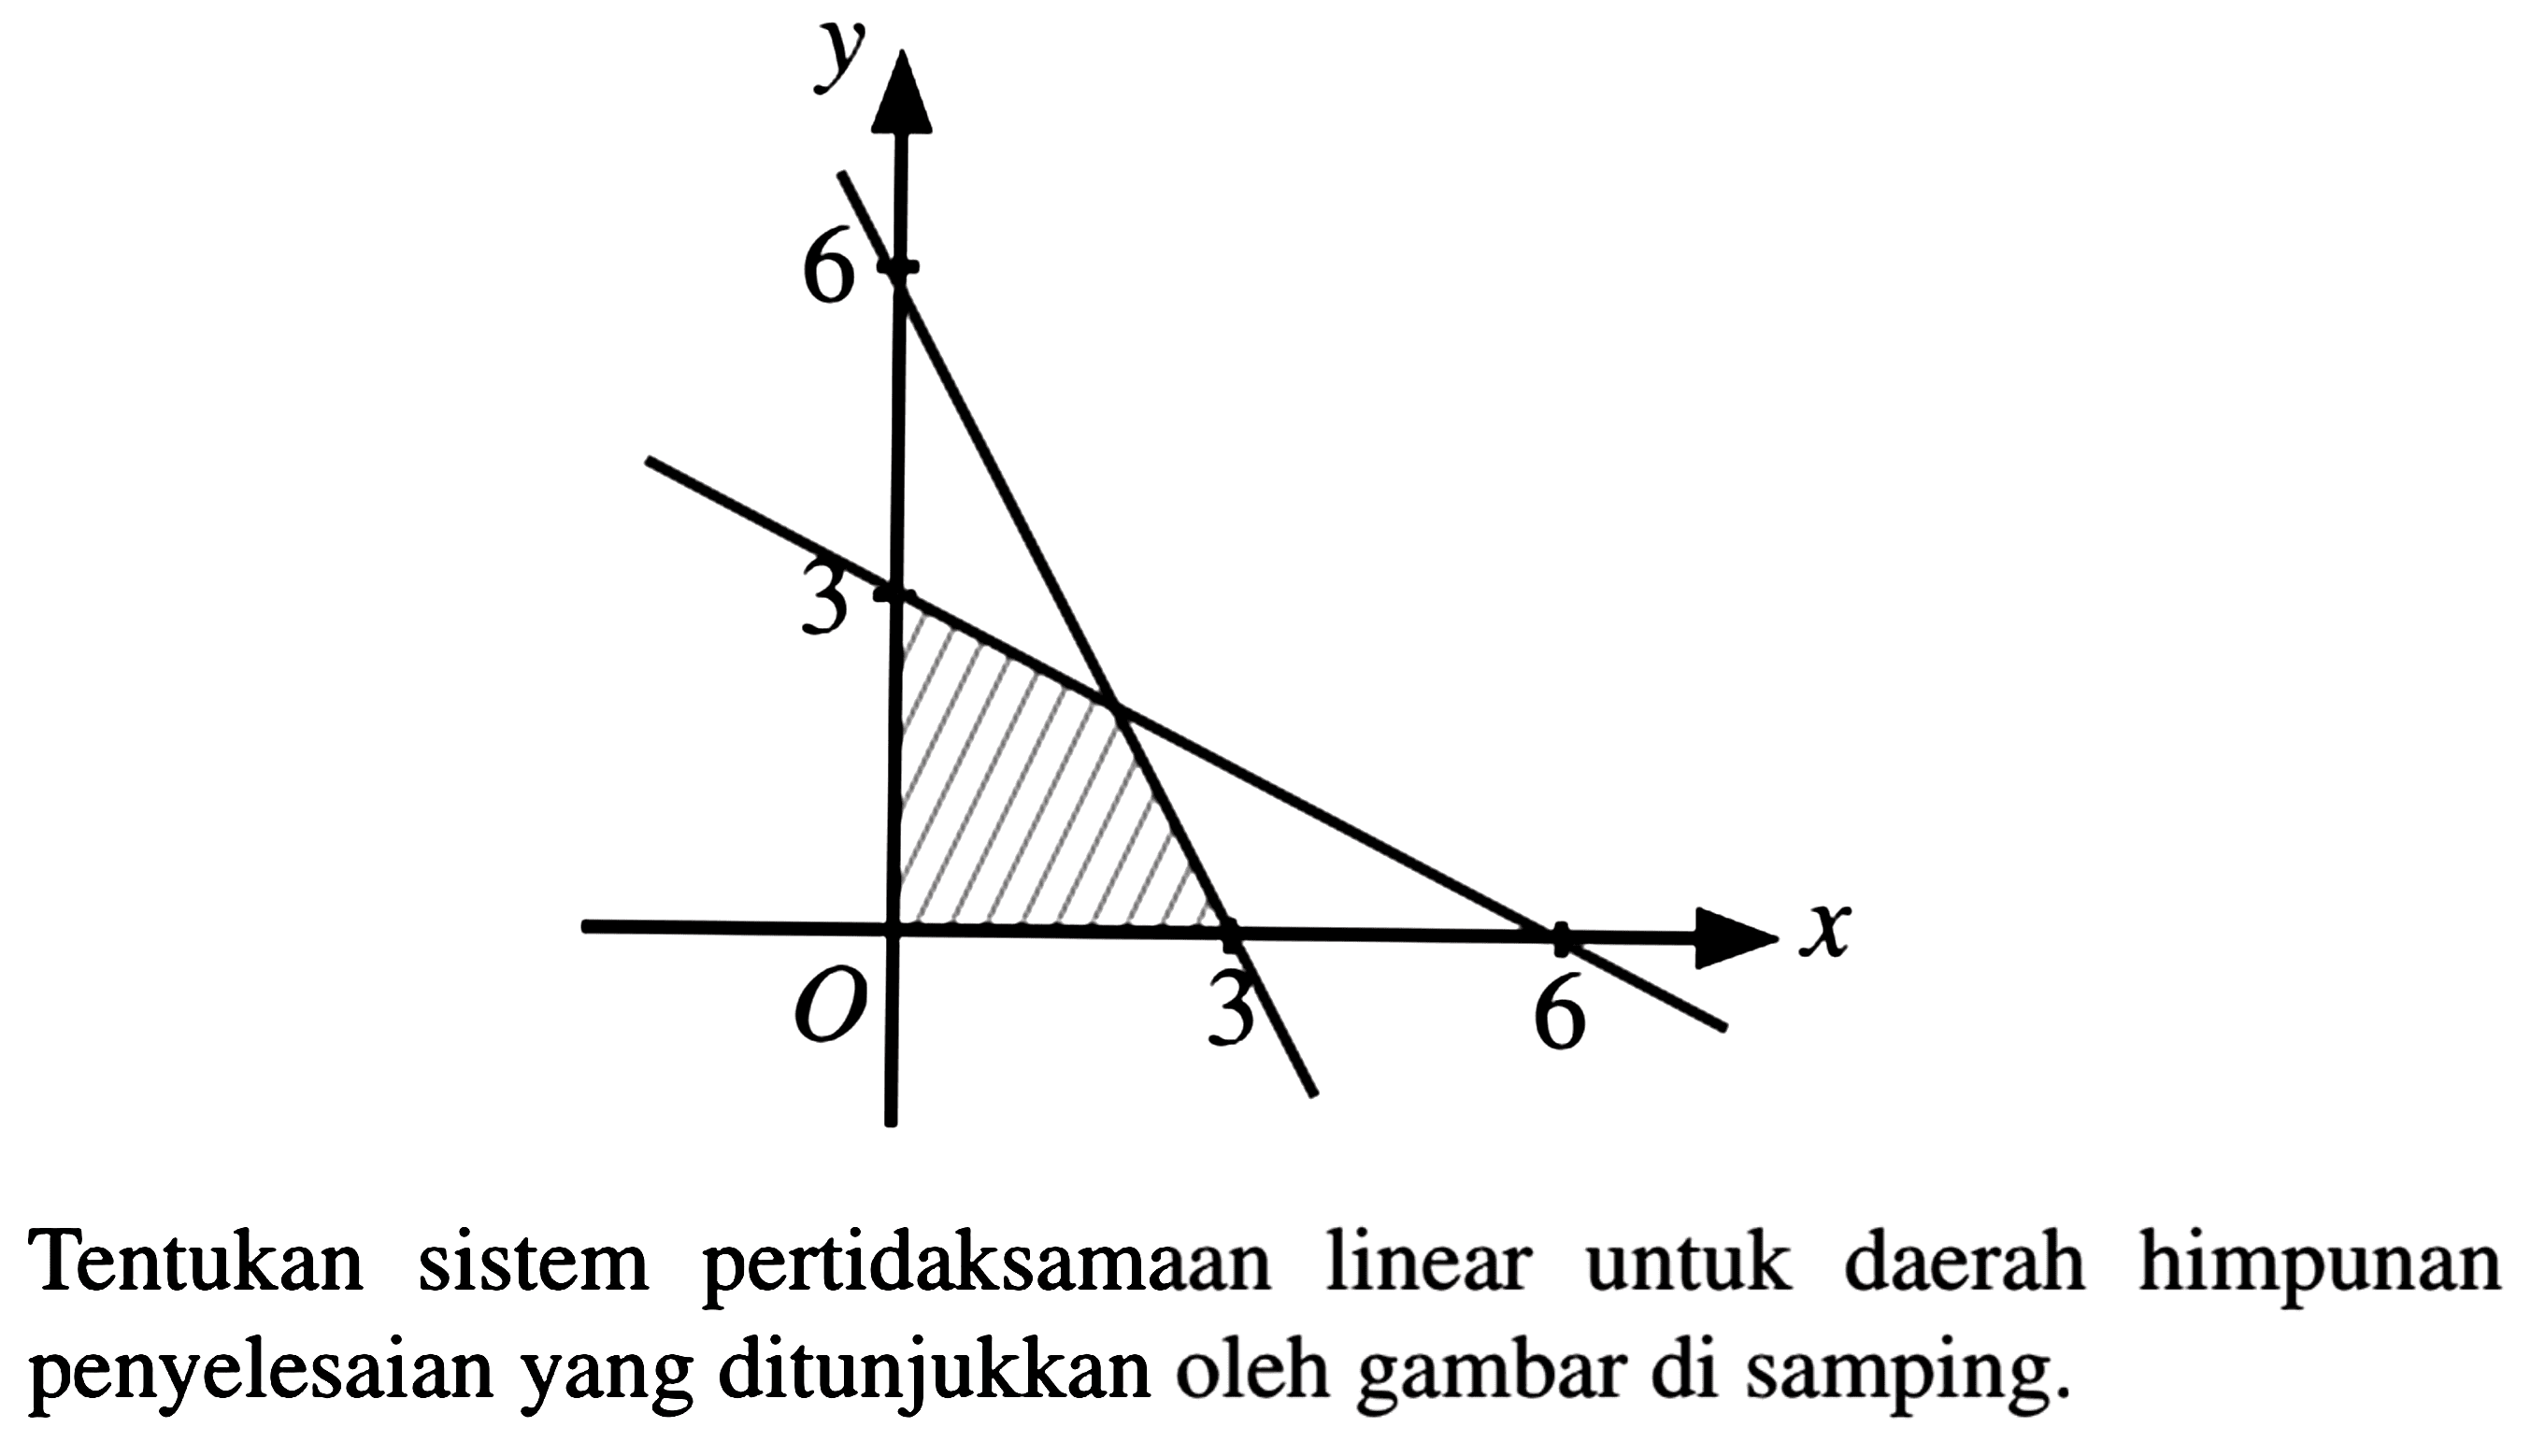 Tentukan sistem pertidaksamaan linear untuk daerah himpunan penyelesaian yang ditunjukkan oleh gambar di samping.

6 3 O 3 6 x